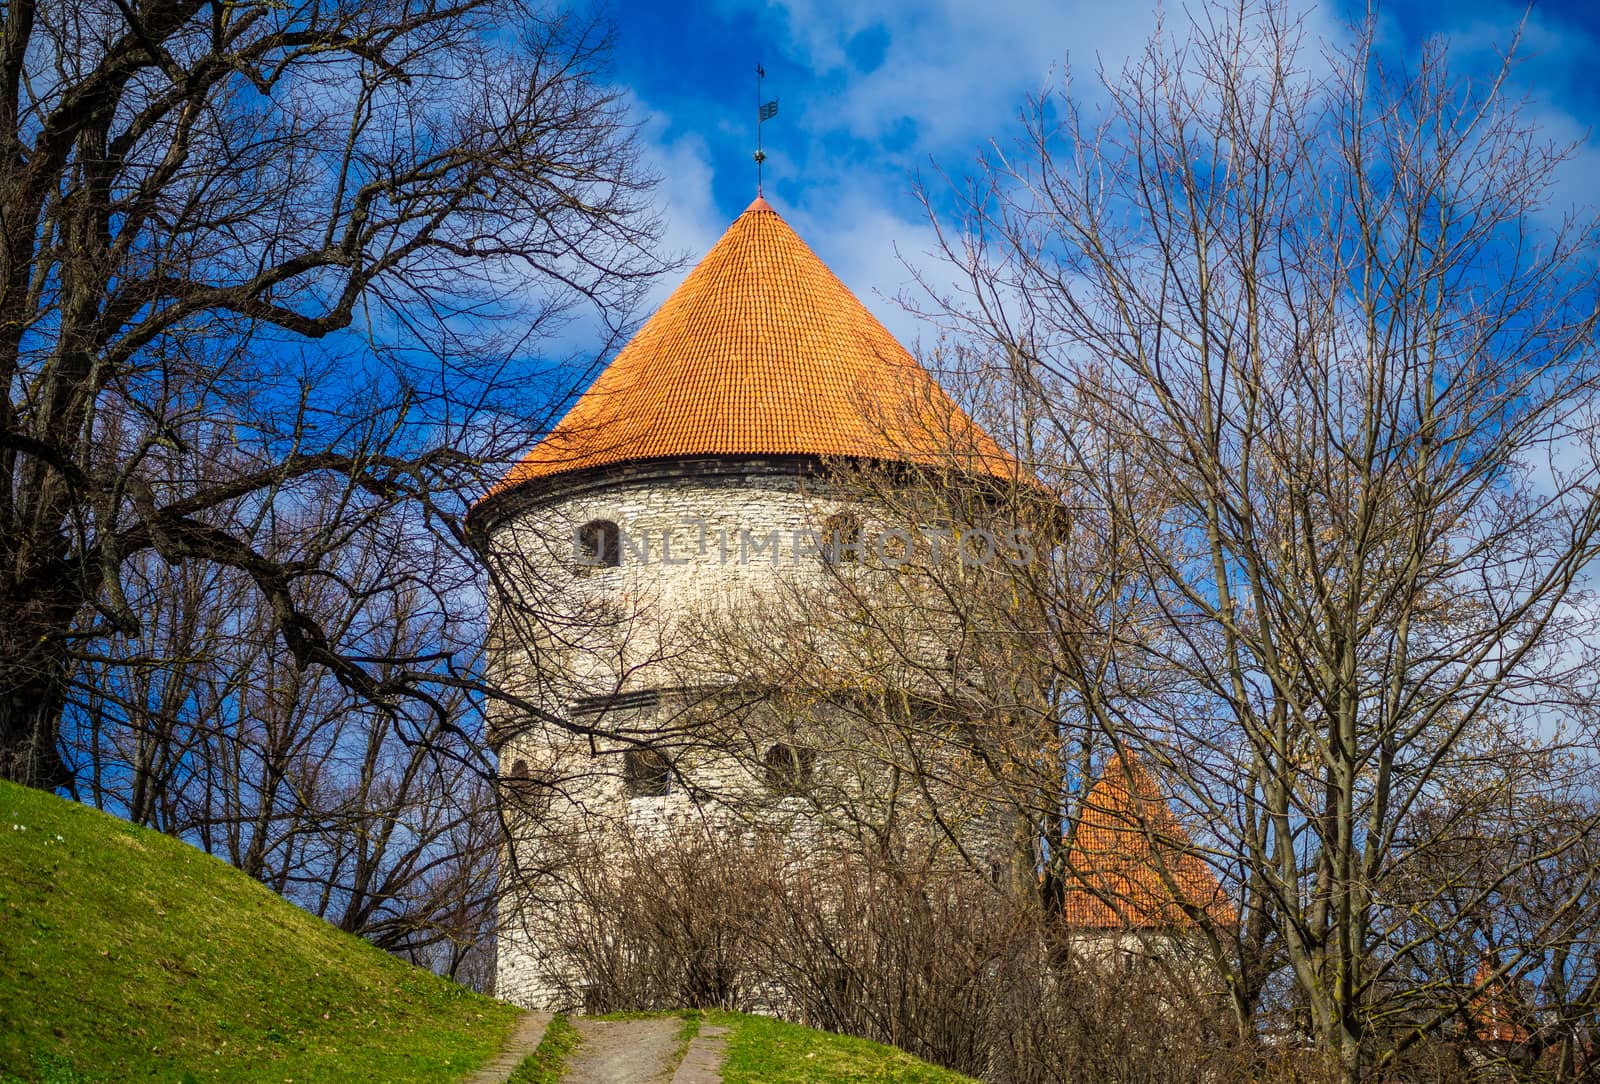 April 19, 2018, Tallinn, Estonia. Fortress tower of the old city in Tallinn.